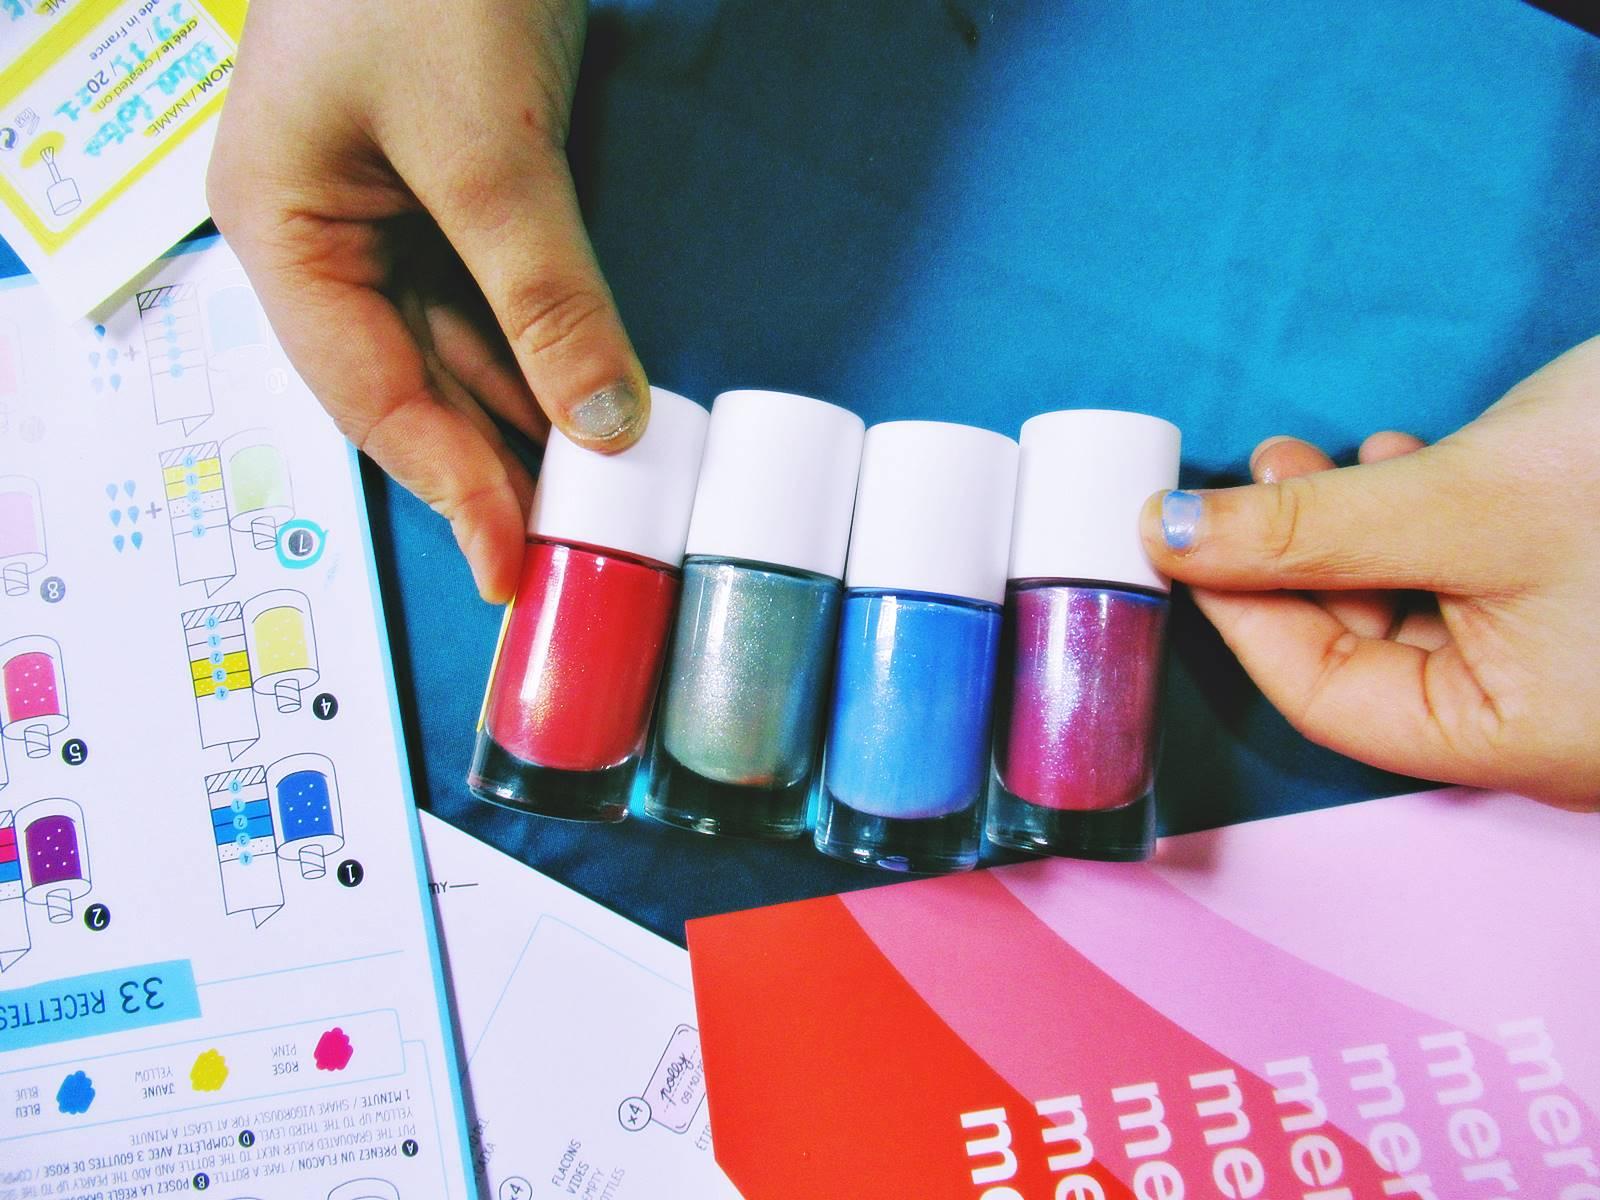 Nail polish colour maker 9